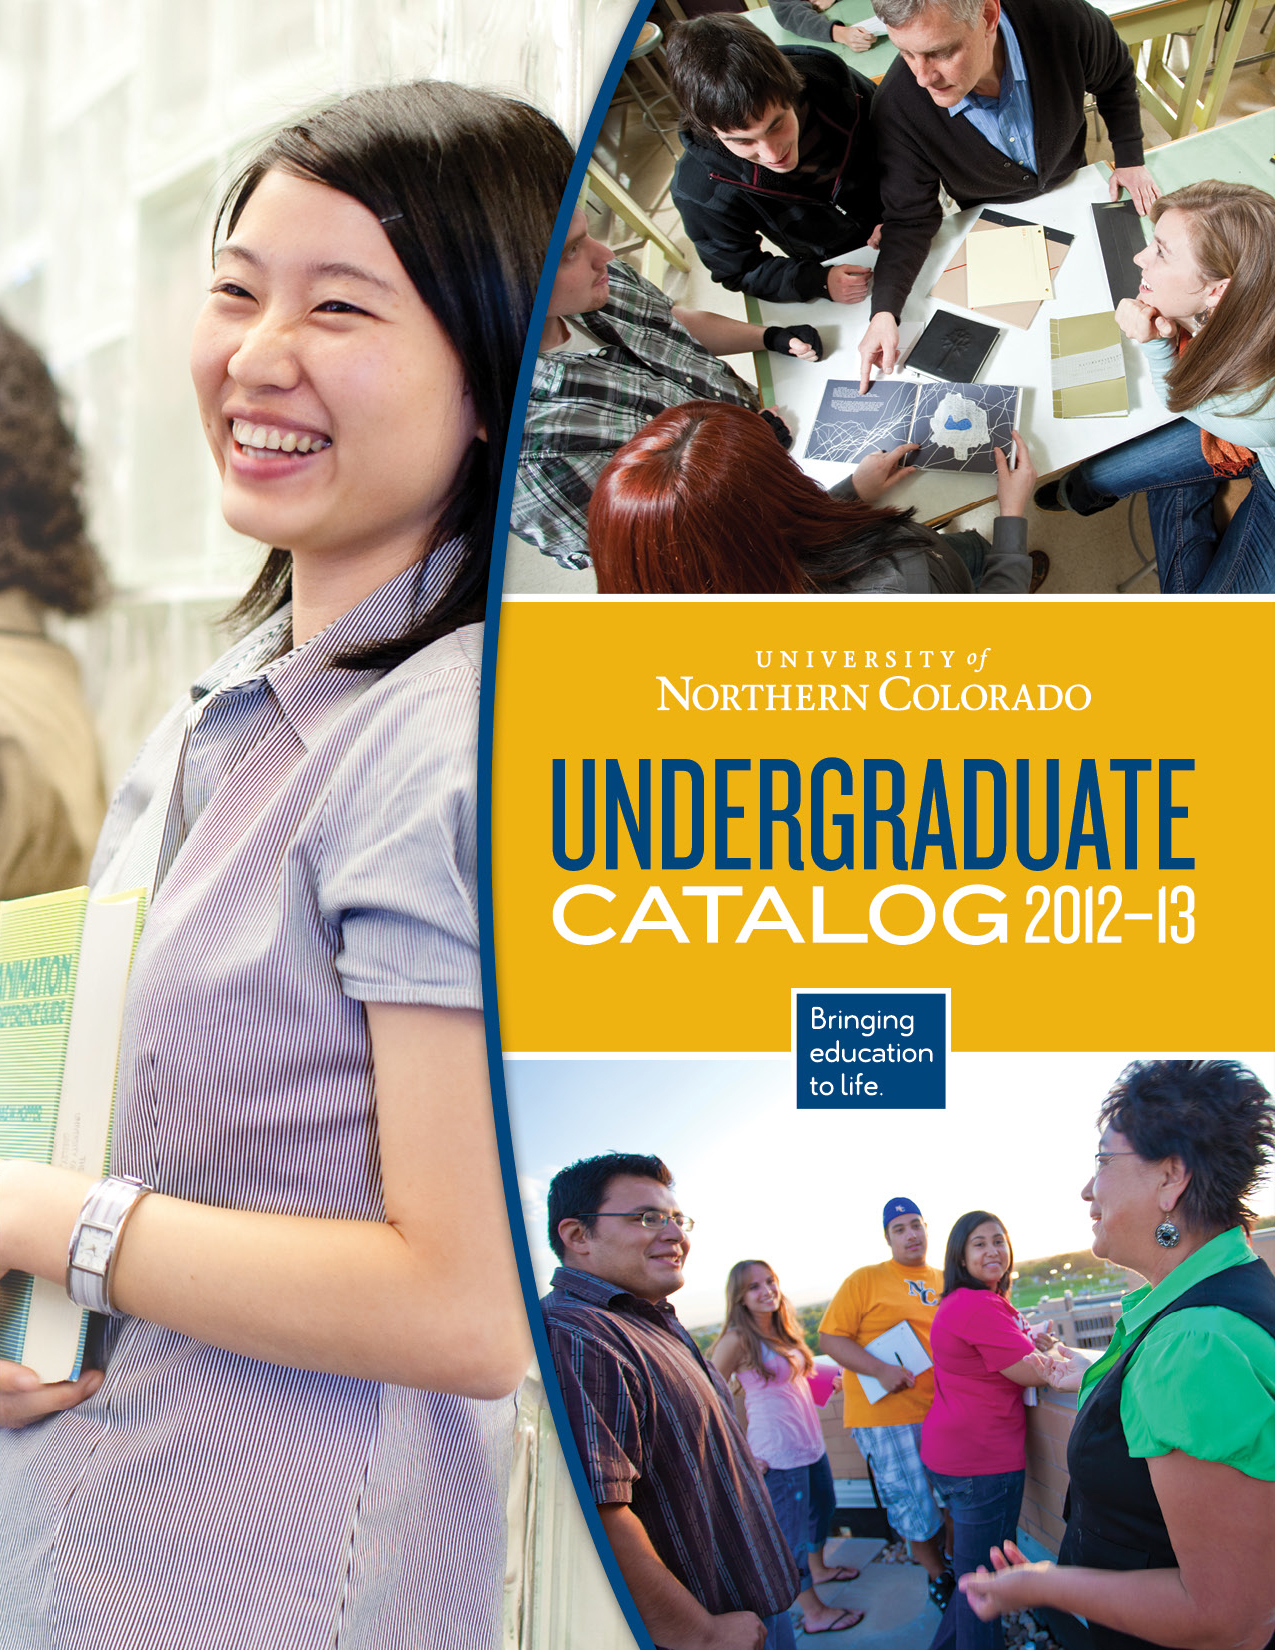 UNC Undergraduate Catalog 2012-13